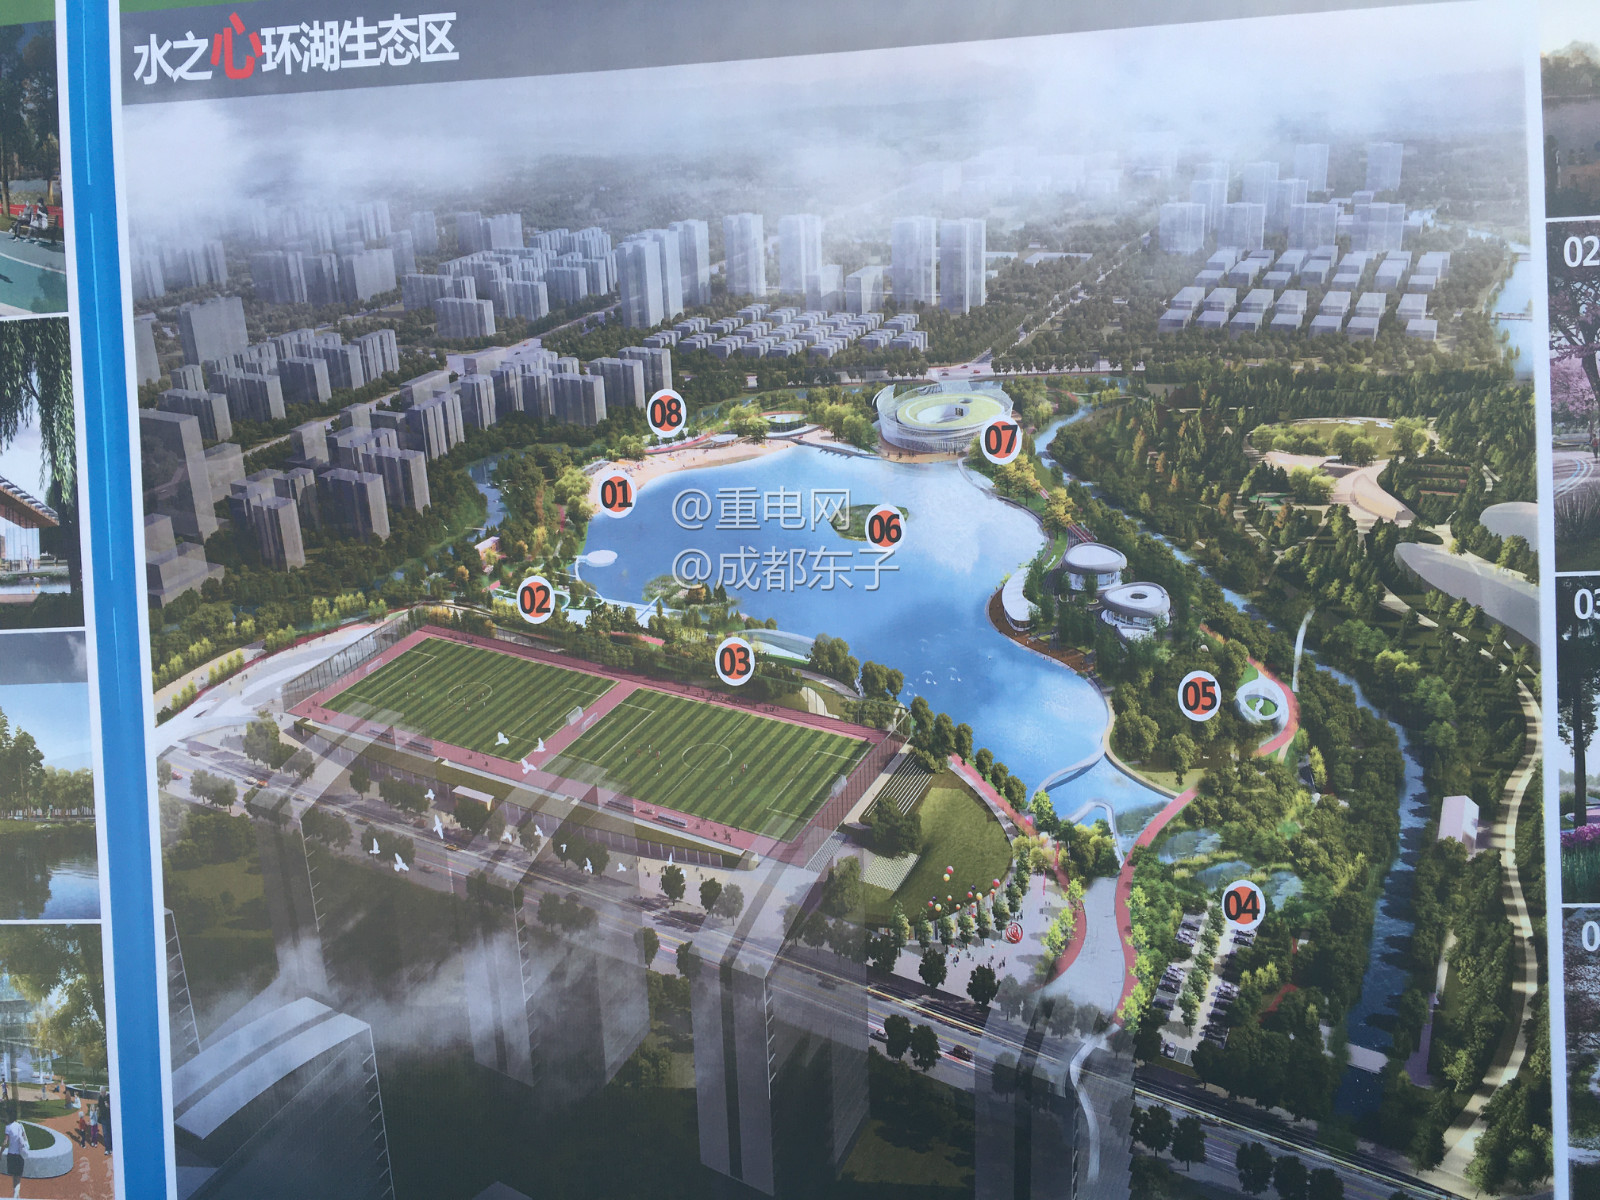 成都市北部新城 凤凰山体育中心设计效果图首爆 新建水主题公园